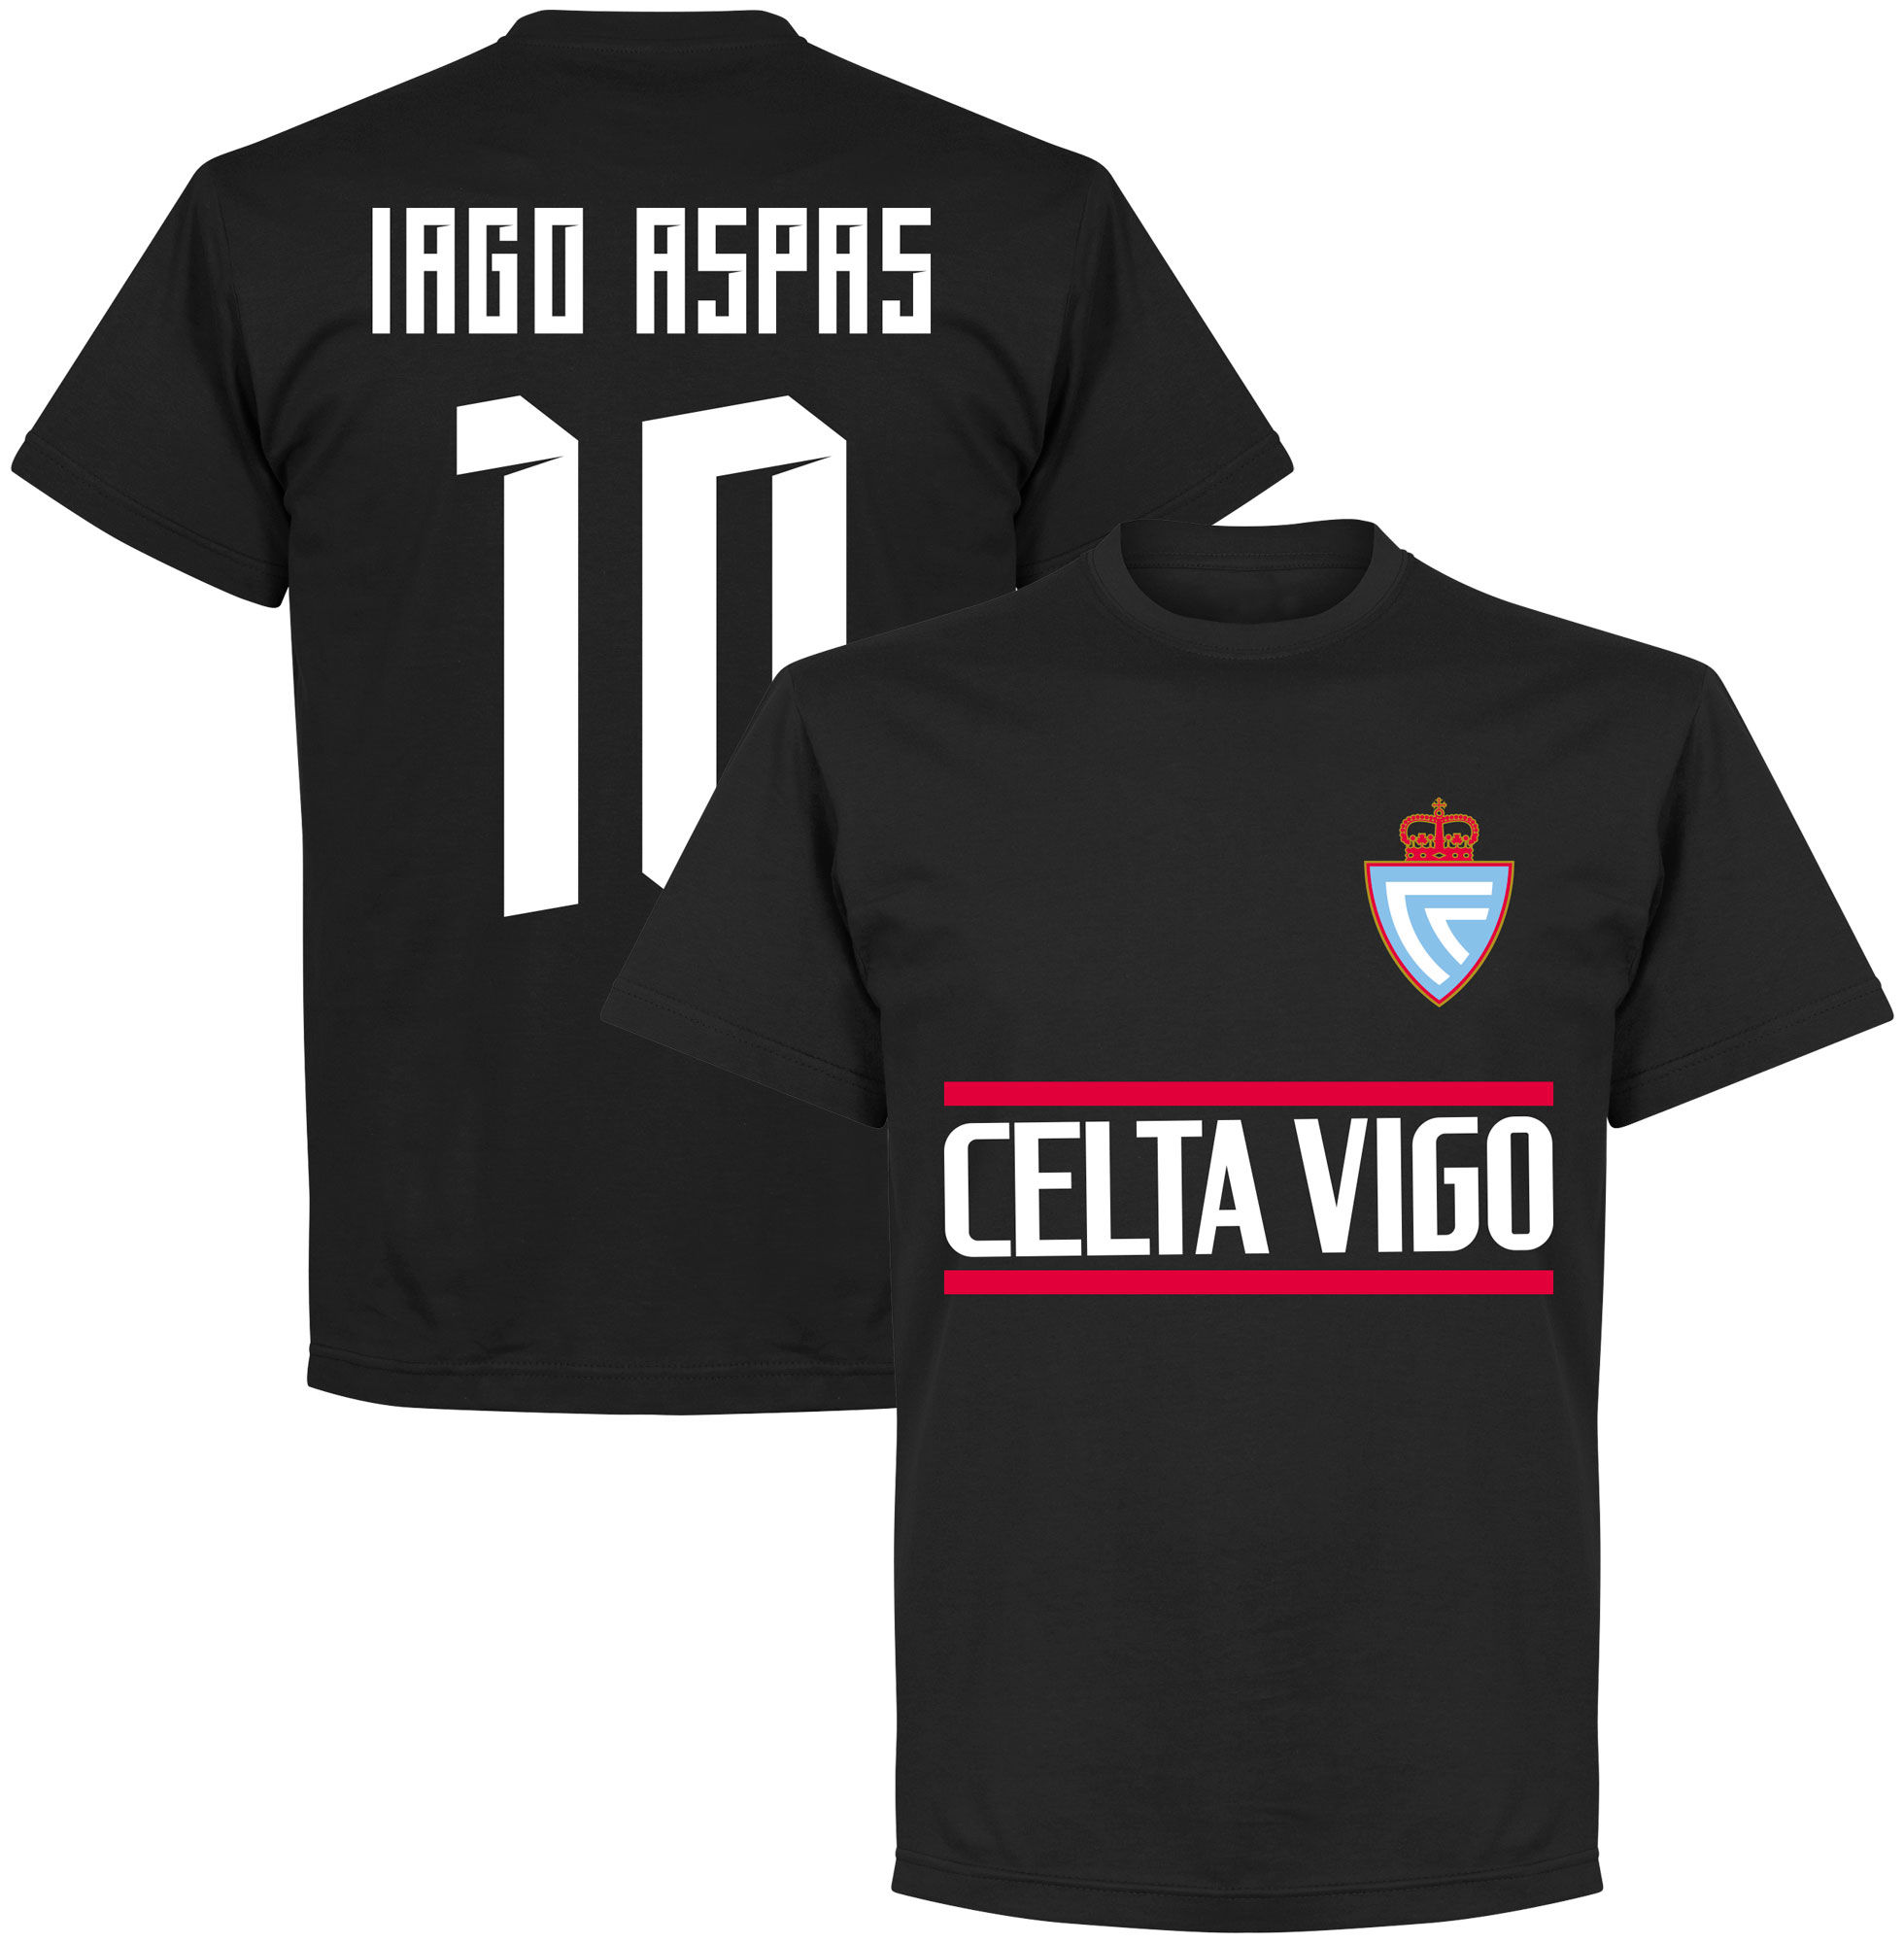 Celta Vigo - Tričko - číslo 10, černé, Iago Aspas